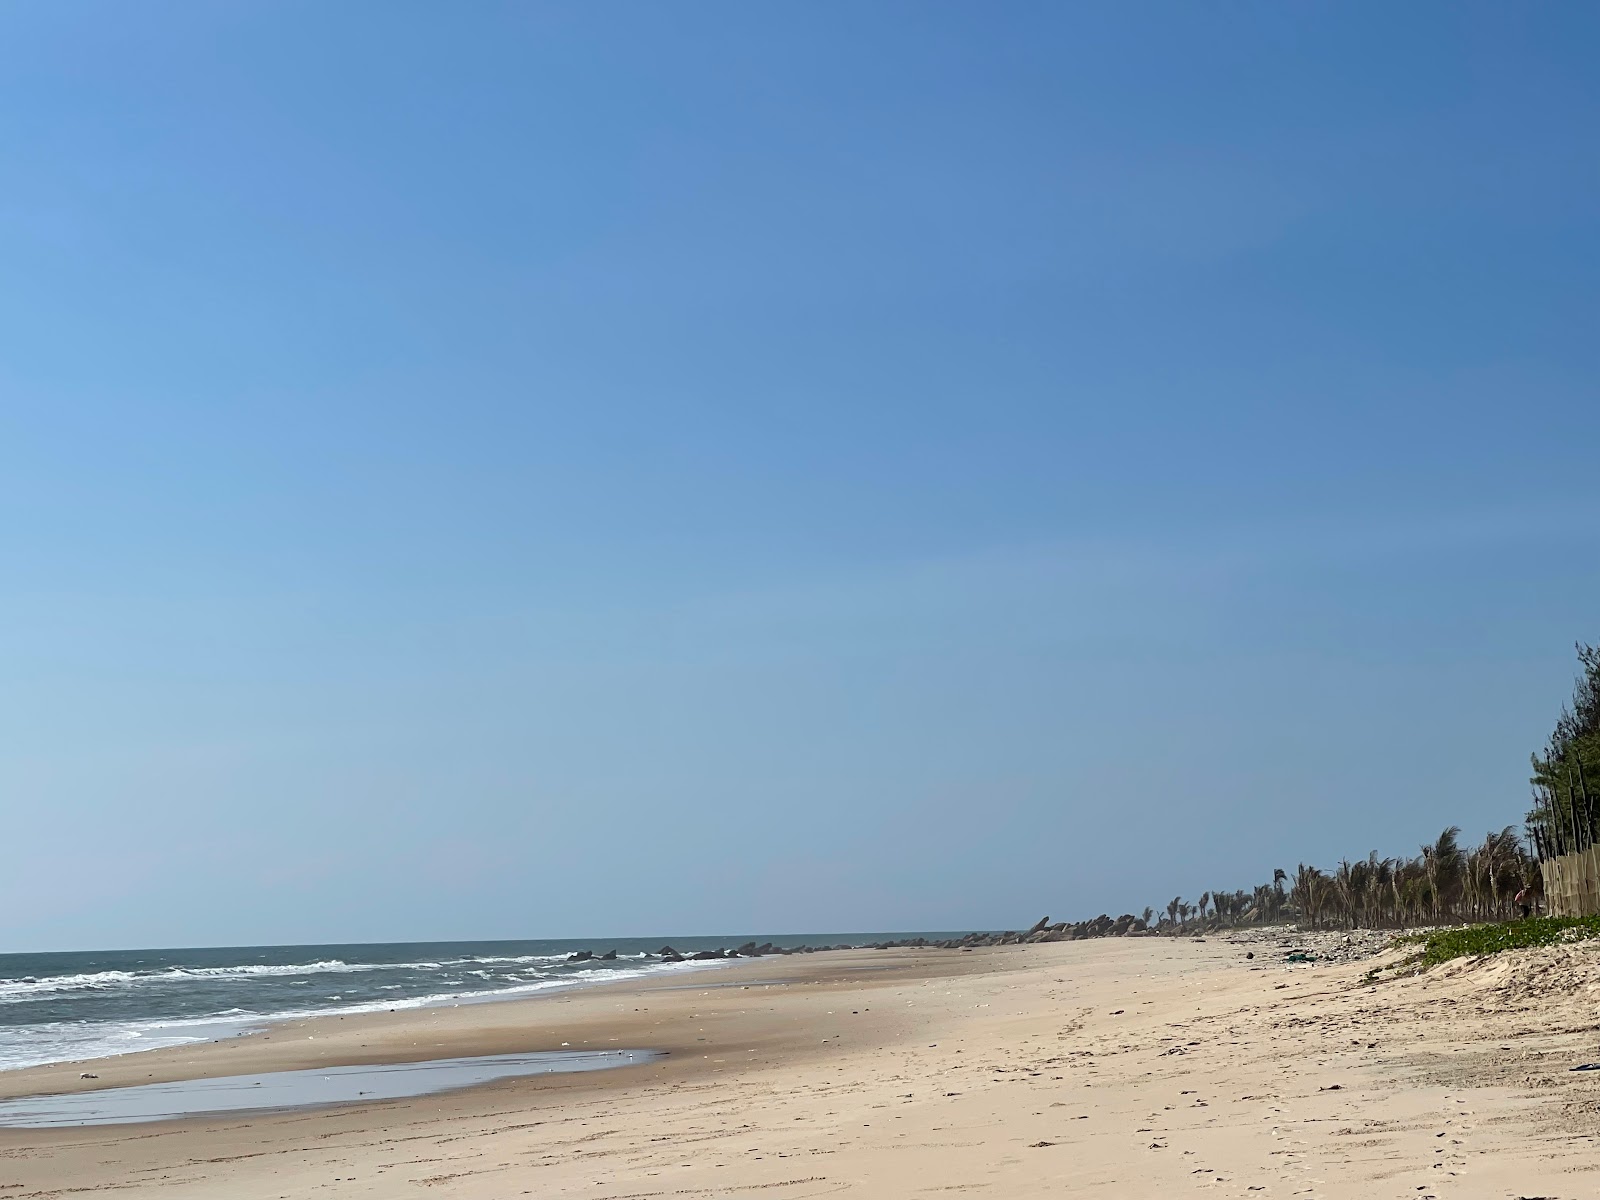 Zdjęcie Pho Hien beach - popularne miejsce wśród znawców relaksu